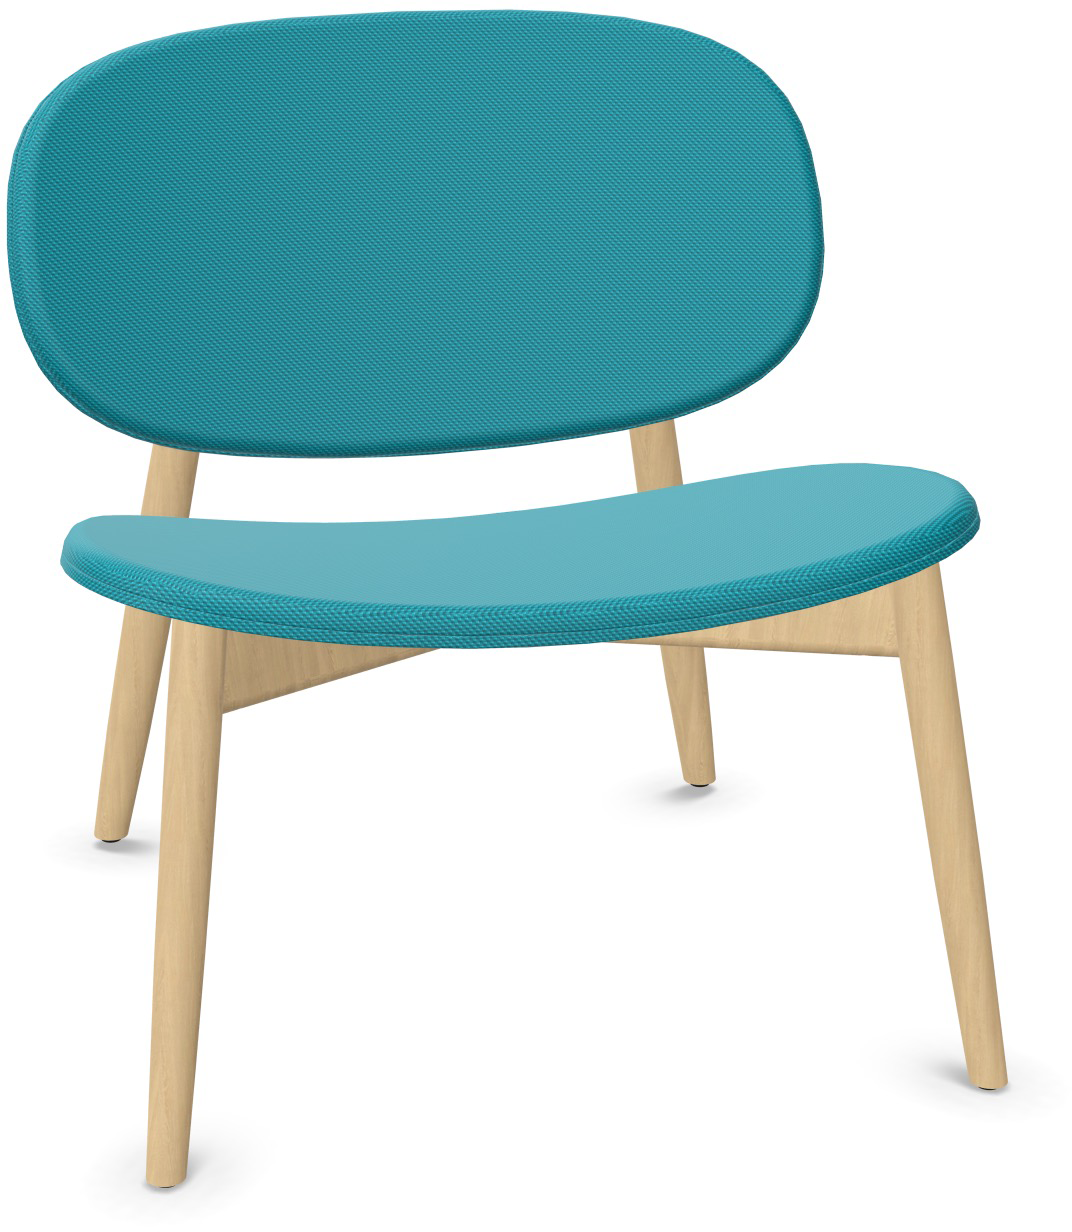 HARMO Relaxsessel in Türkis präsentiert im Onlineshop von KAQTU Design AG. Sessel ist von Infiniti Design